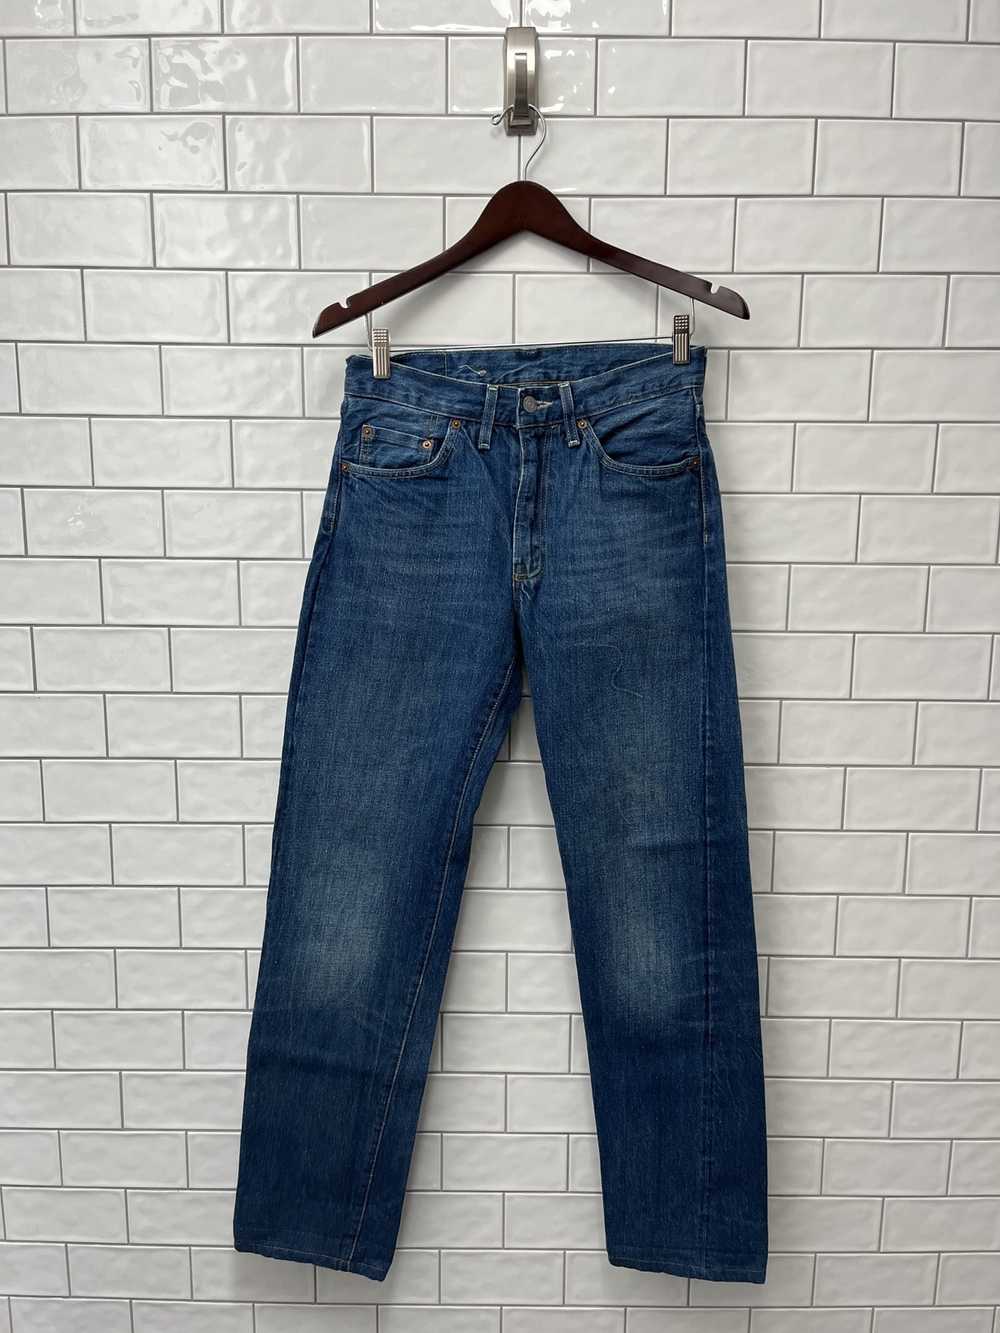 LVC Levis Vintage Clothing 501XX 1937 Cinch Back Selvedge Denim Jeans Size  28X32